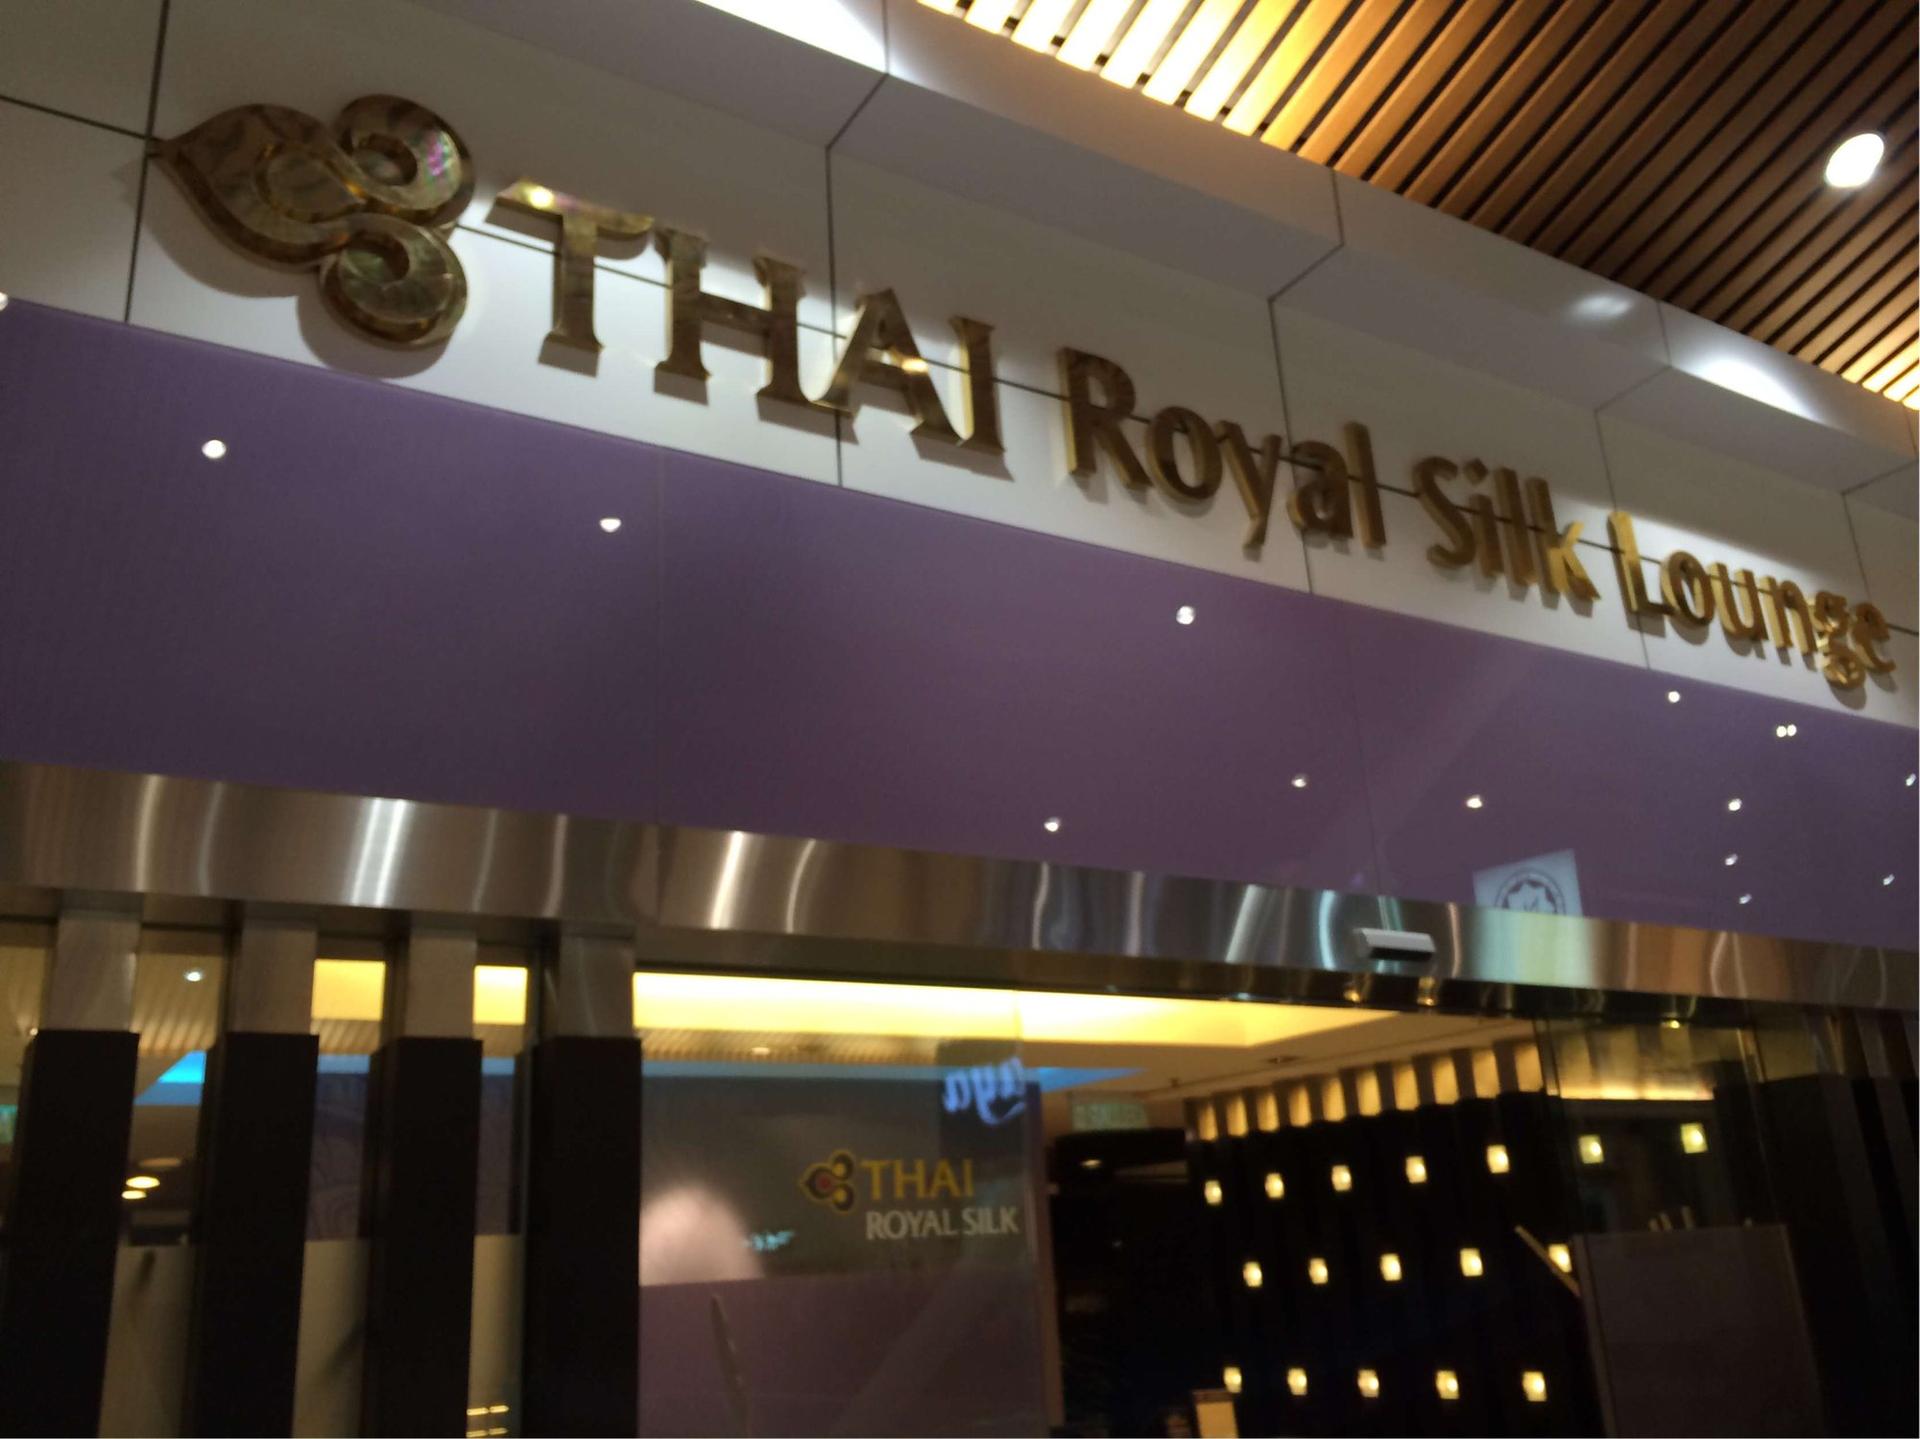 Thai Airways Royal Silk Lounge image 3 of 12